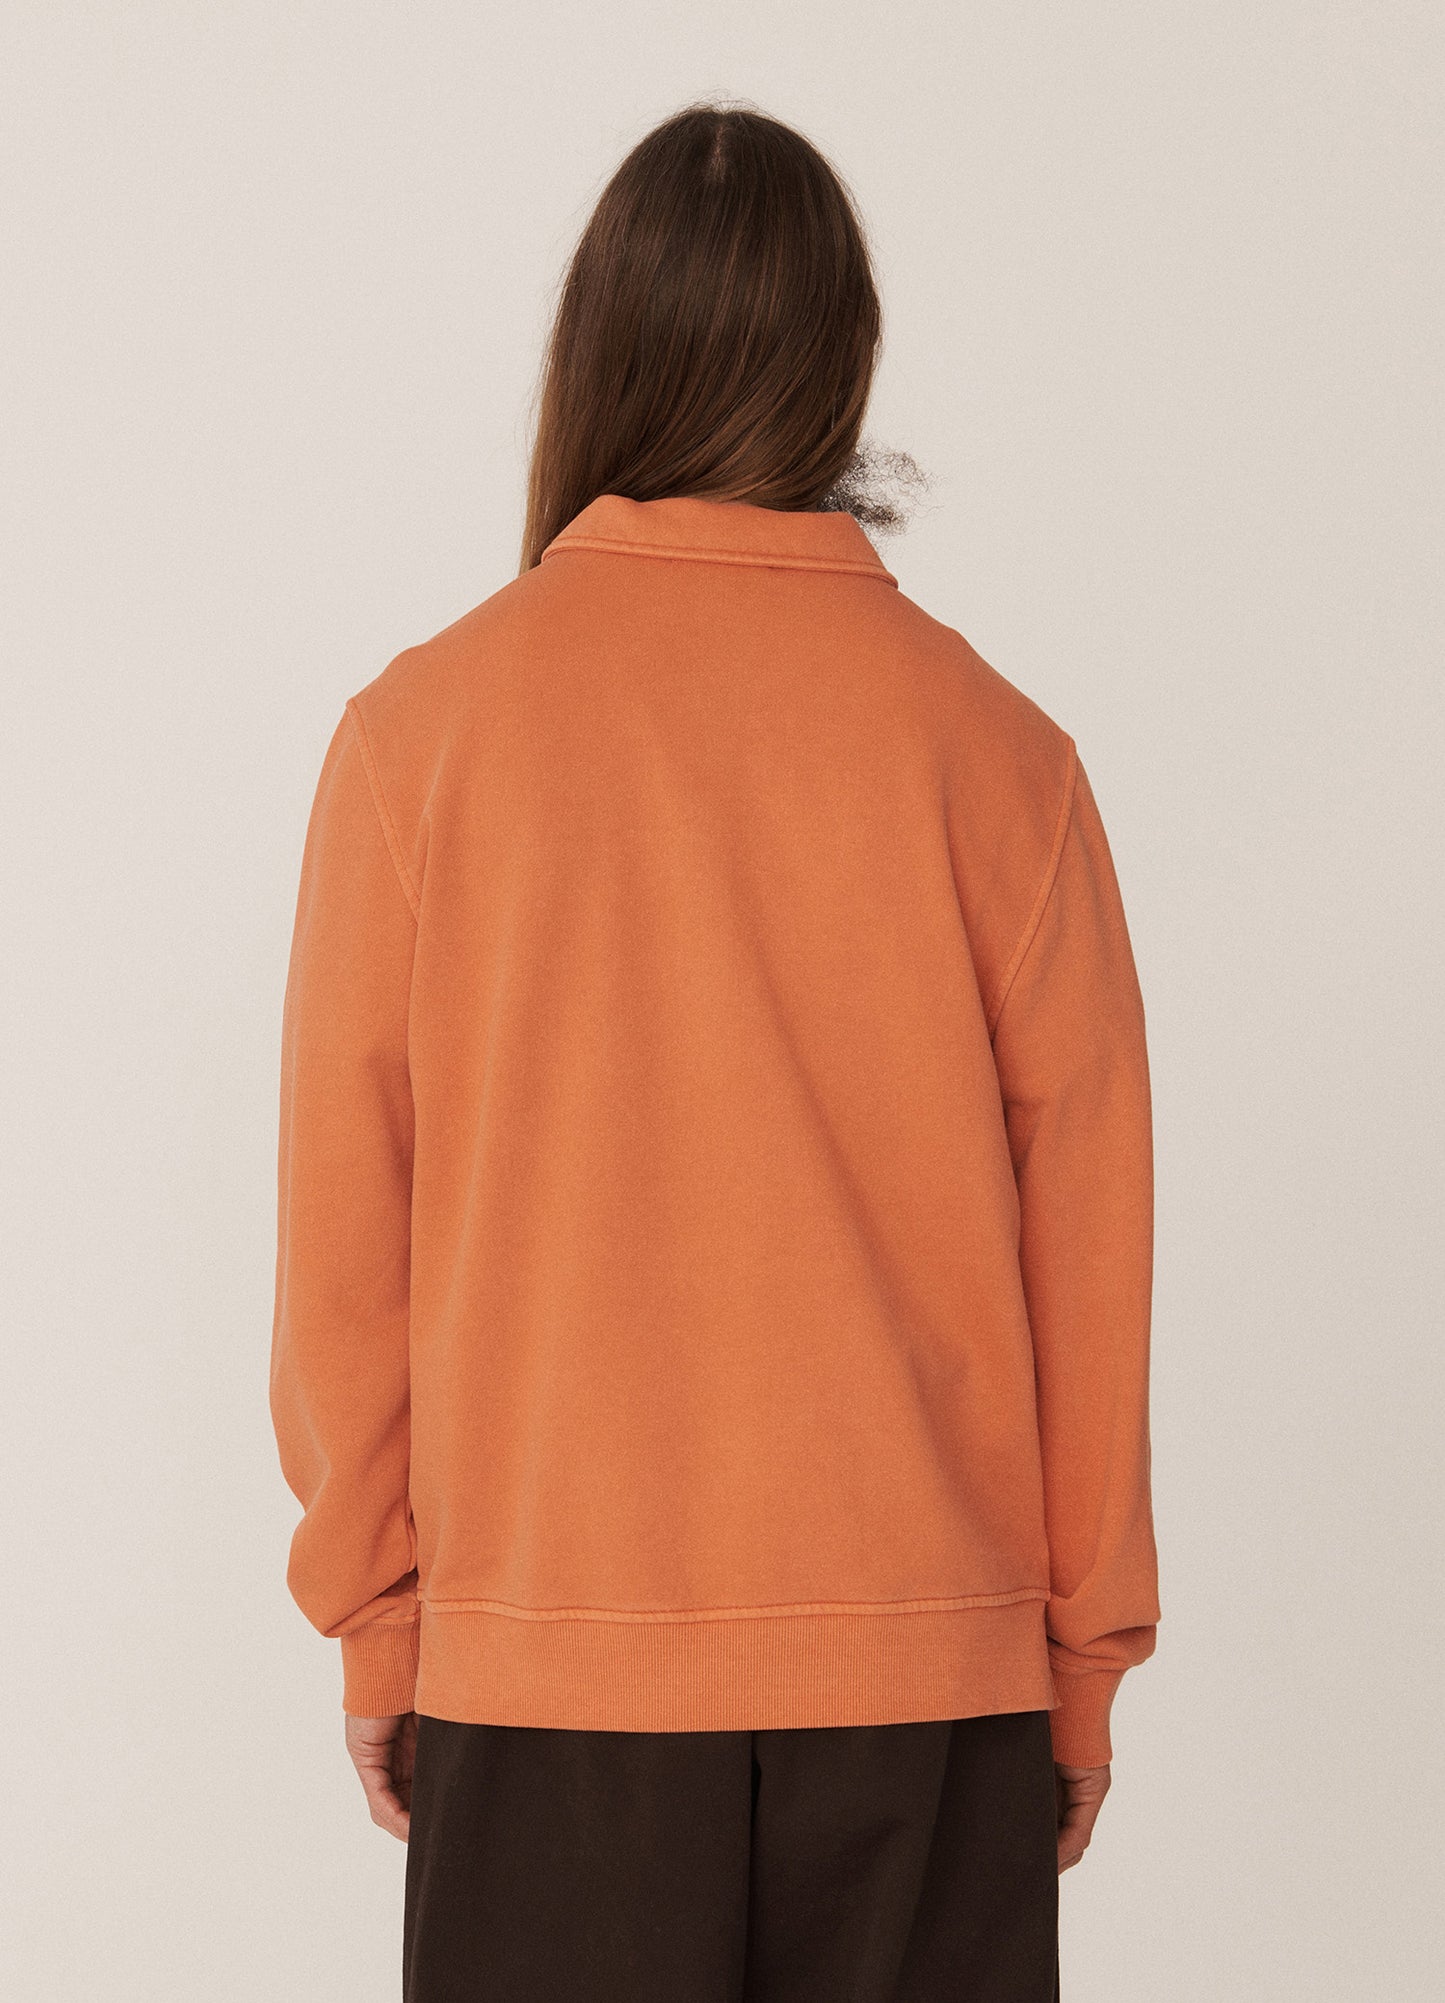 
                  
                    Sugden Sweatshirt - Orange
                  
                